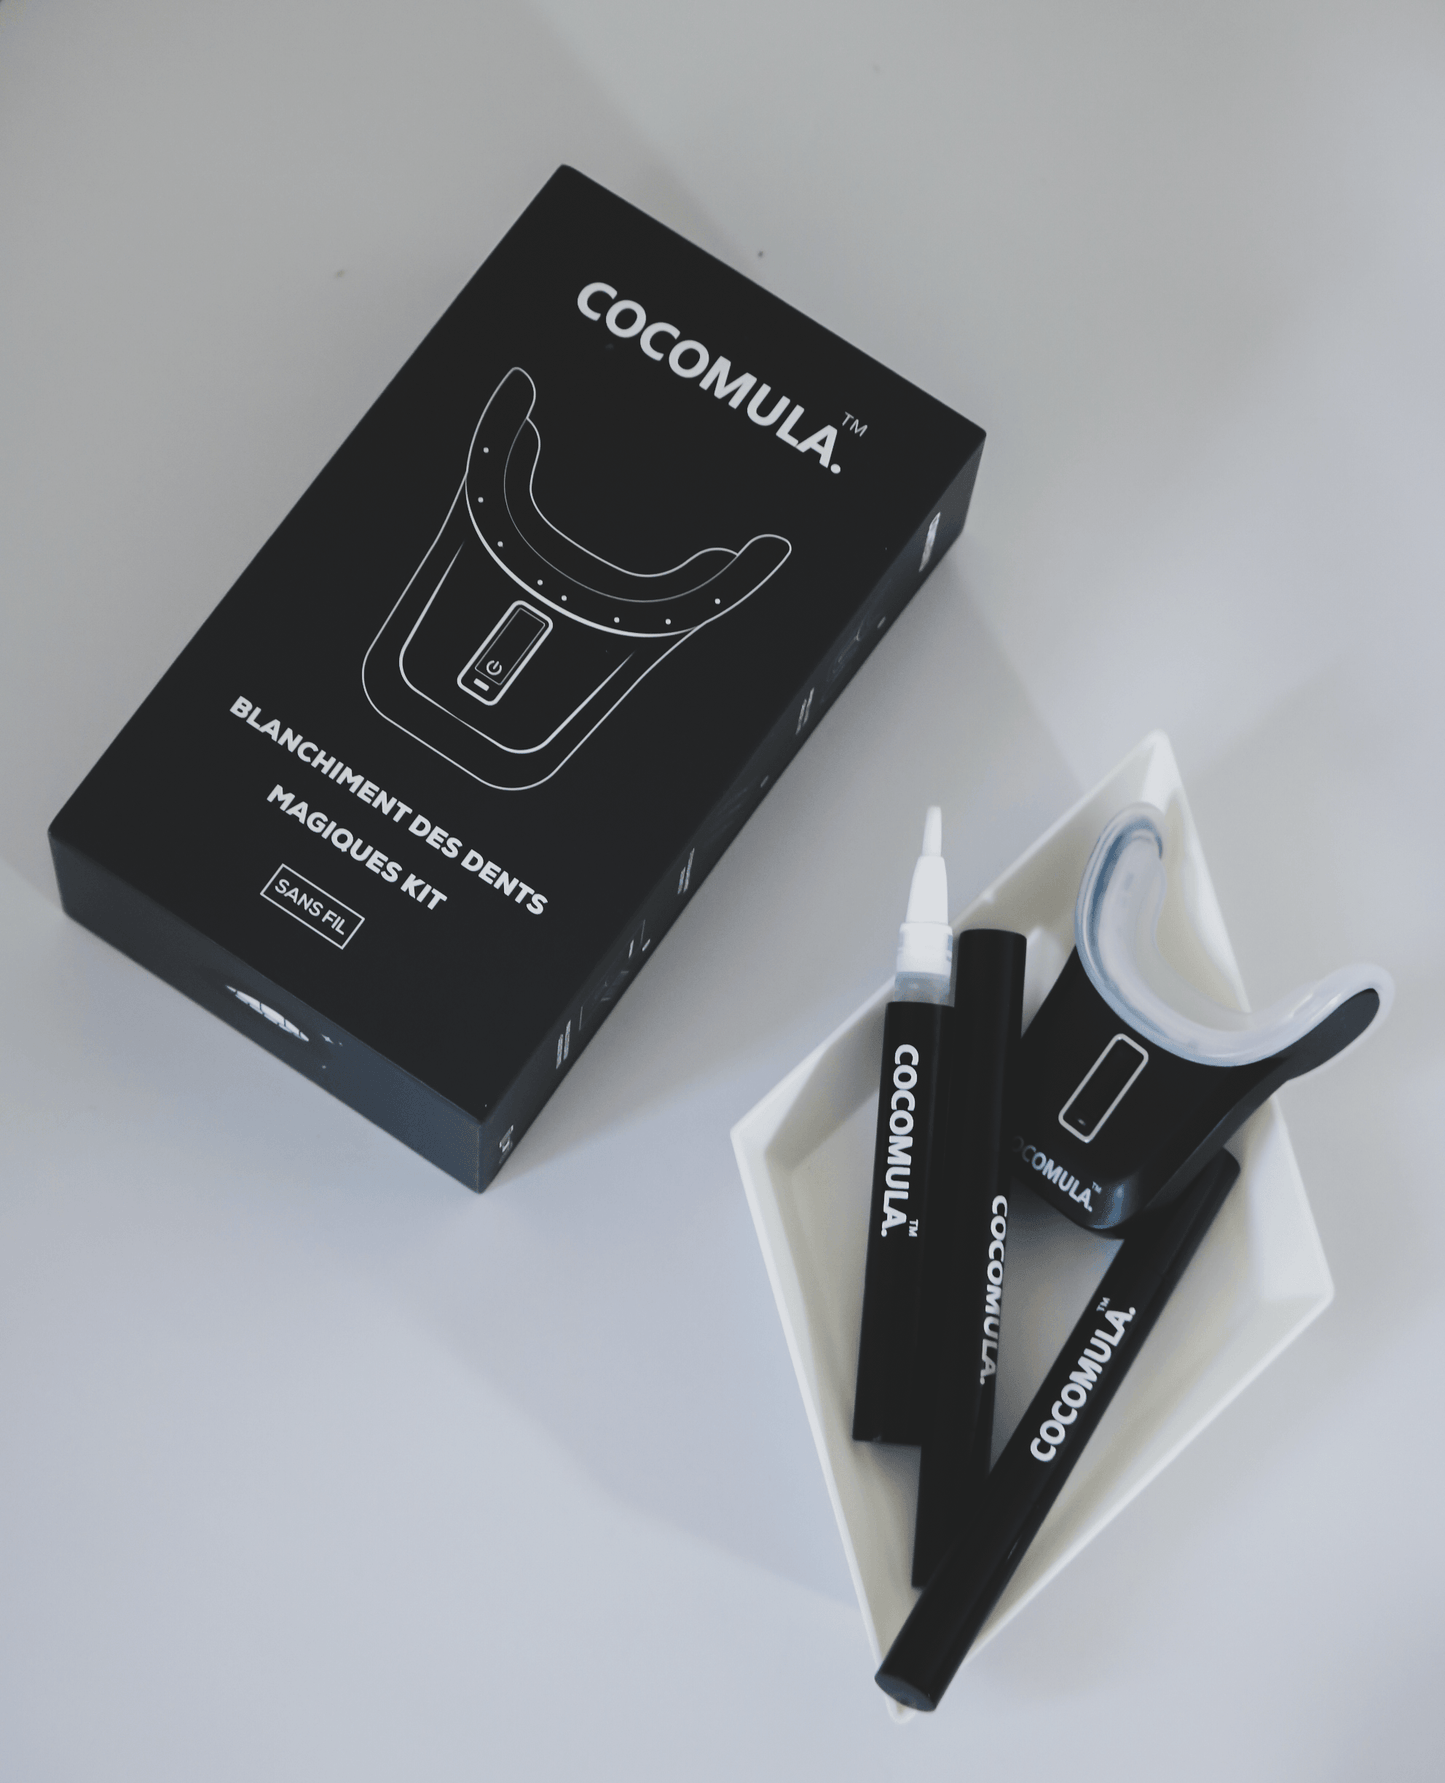 Appareil de Blanchiment des Dents - Magique Kit - COCOMULA ™ | Site Officiel | Produits Avancés De Blanchiment Des Dents à Domicile